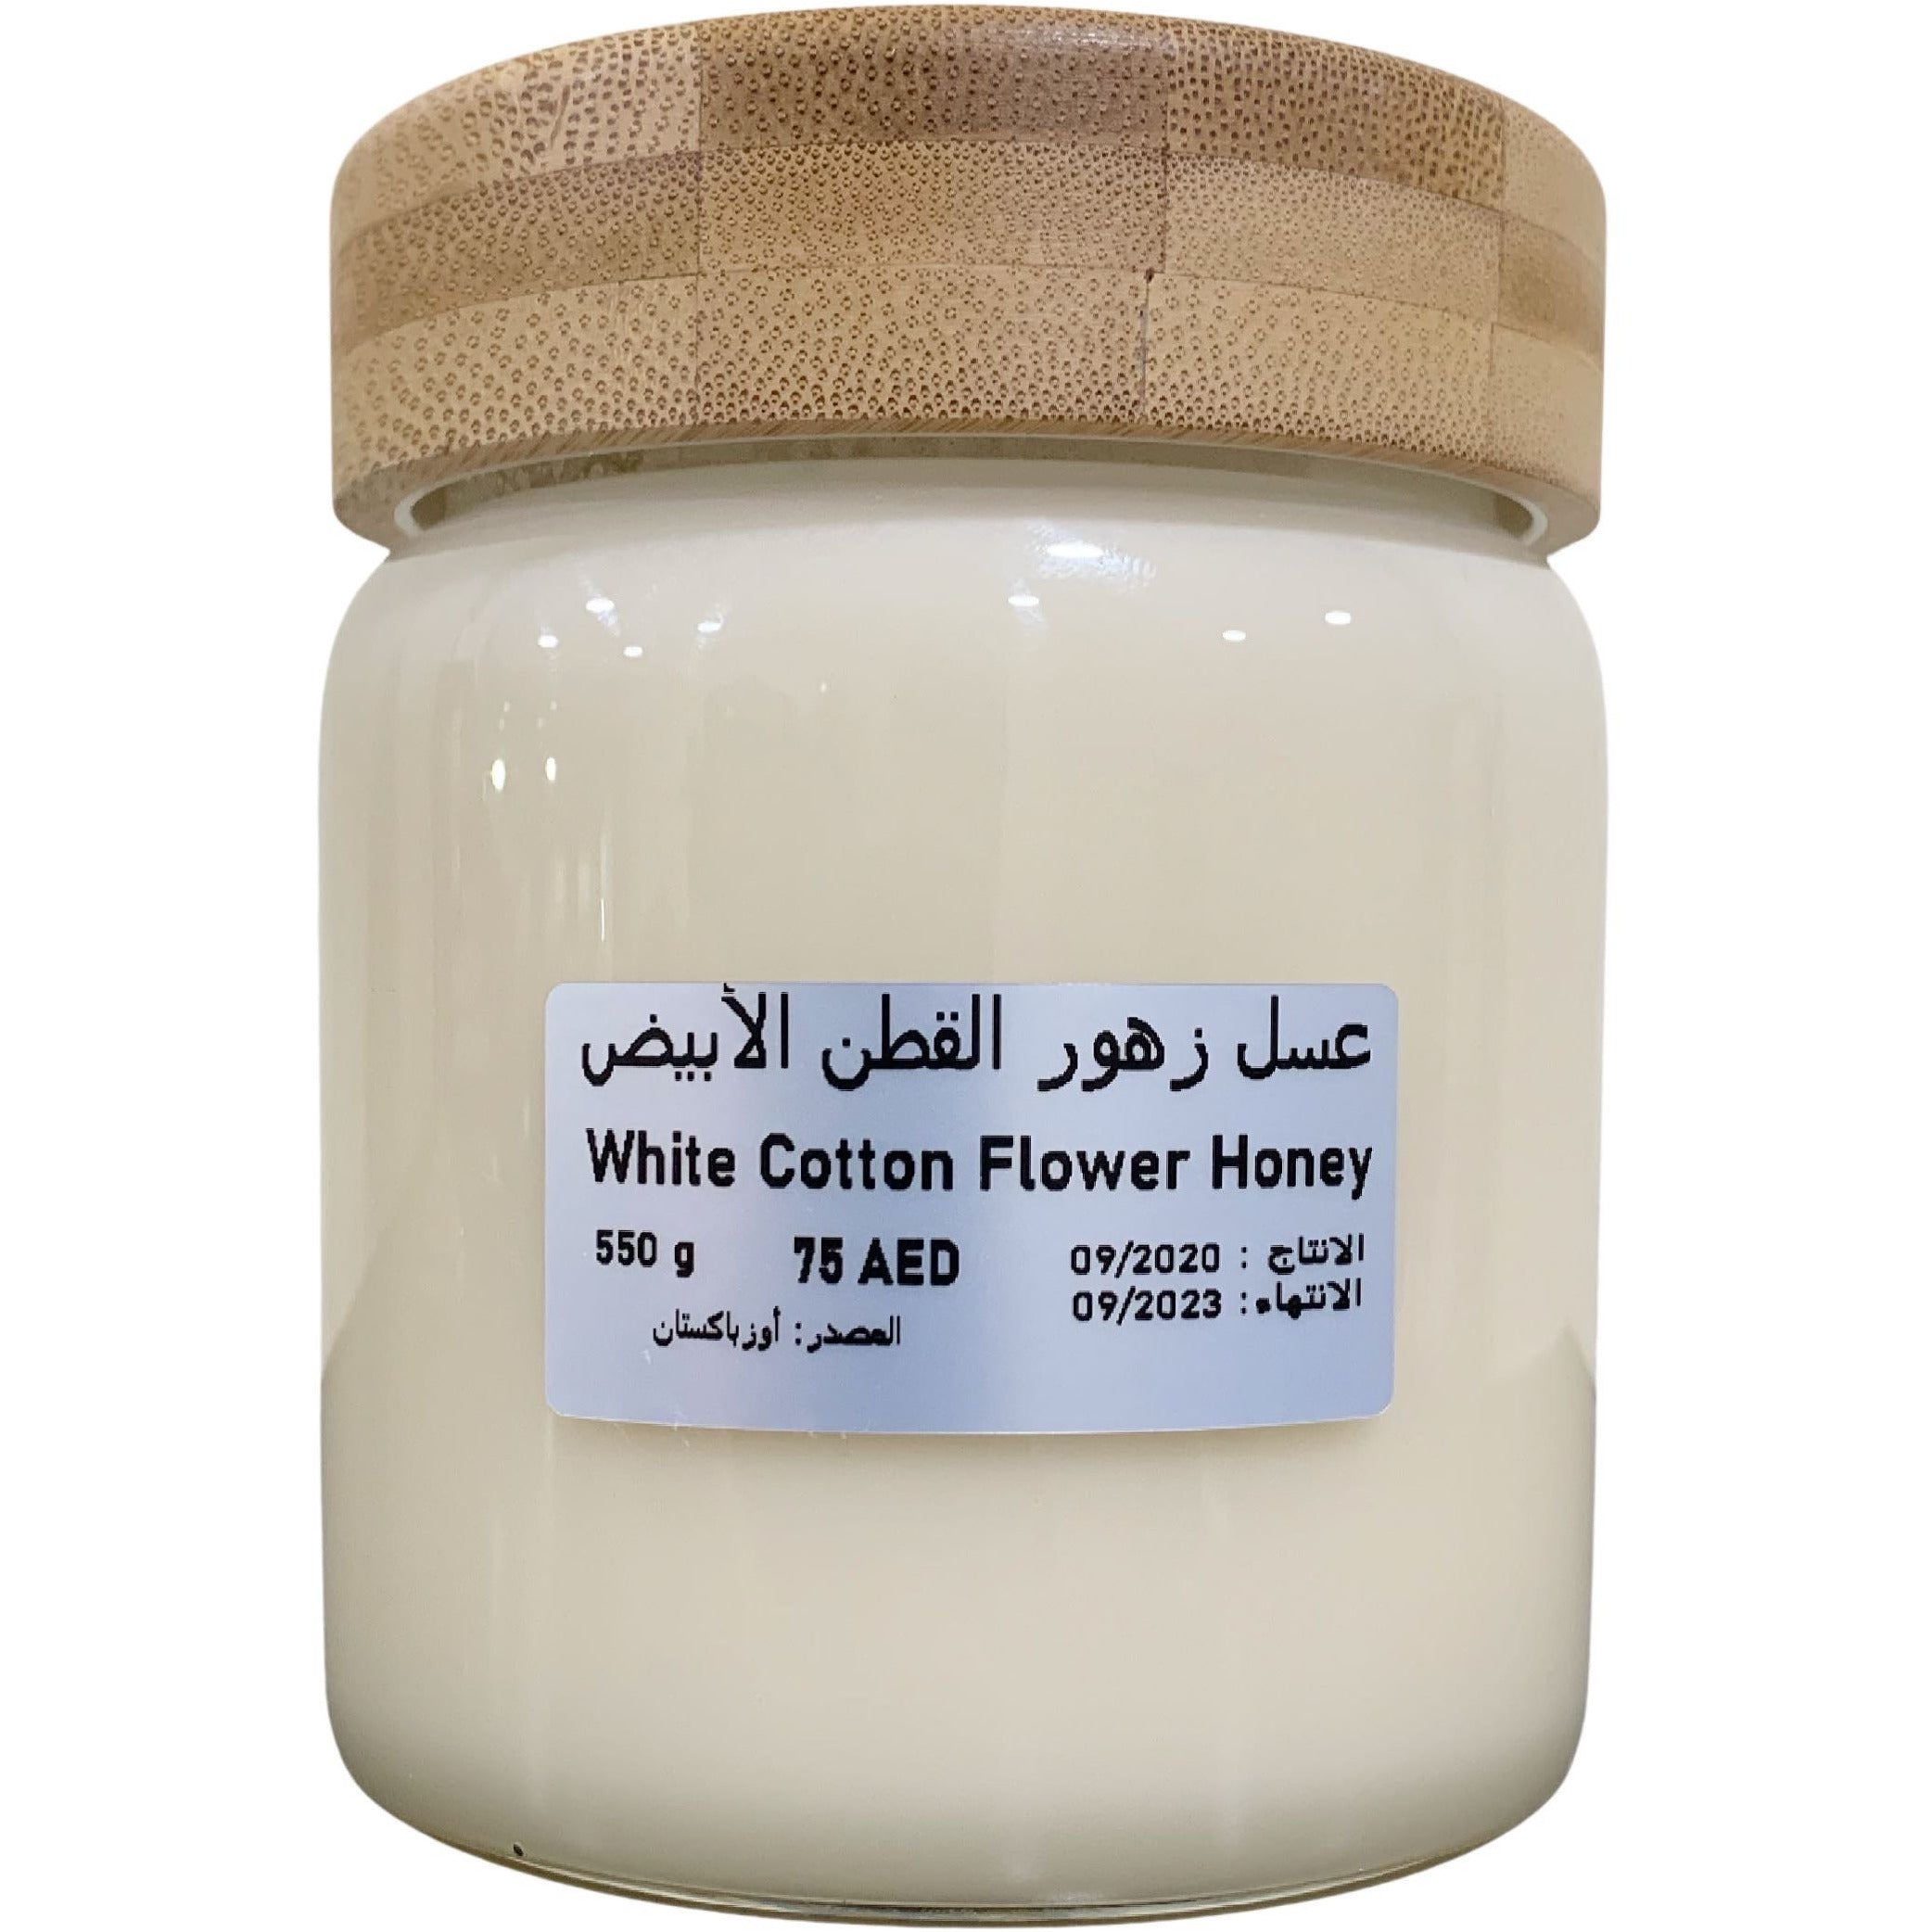 White Cotton Flower Honey